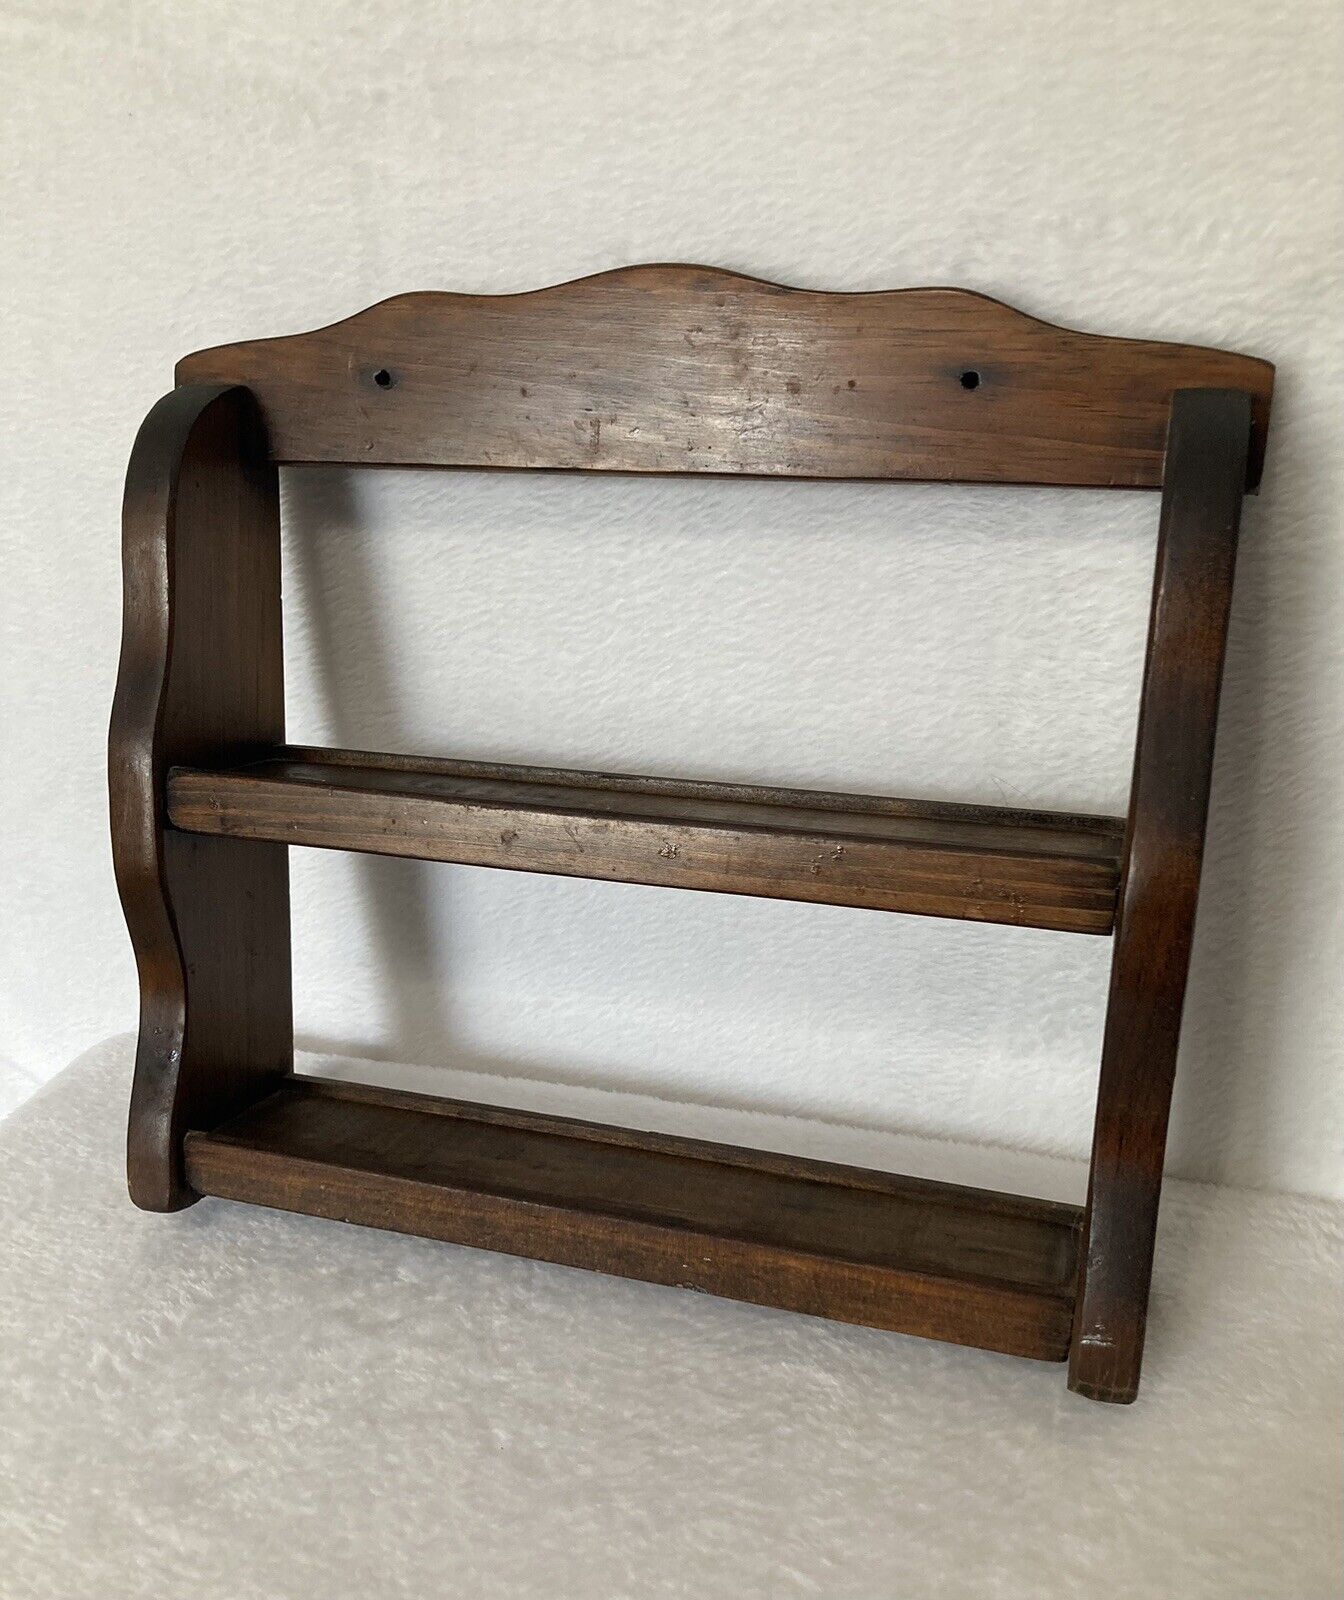 Vintage Oak Wood Spice Rack 2 Tier Shelf Wall Hanging Freestanding 11” T X 14” W